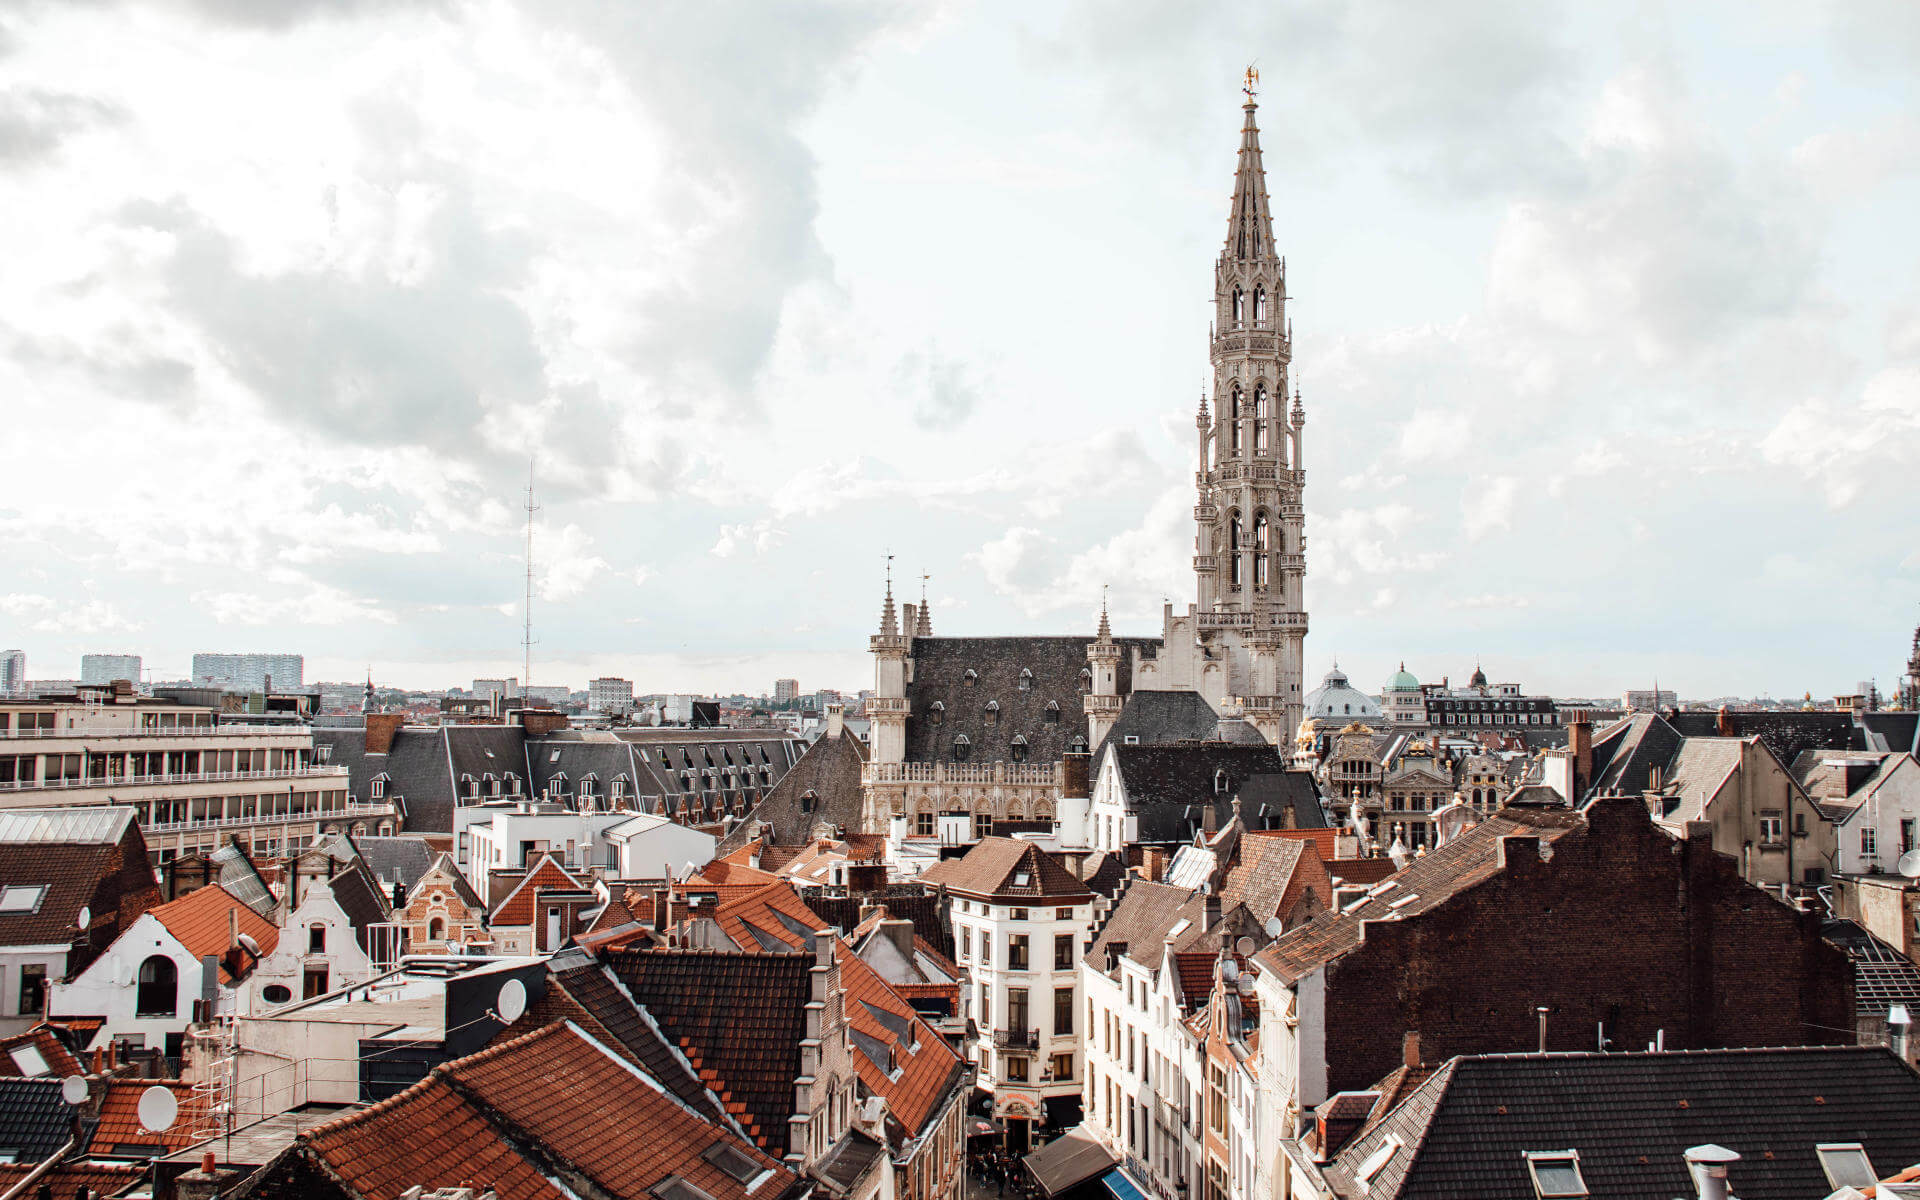 Die Aussicht über die Dächer von Brüssel ist wunderschön.